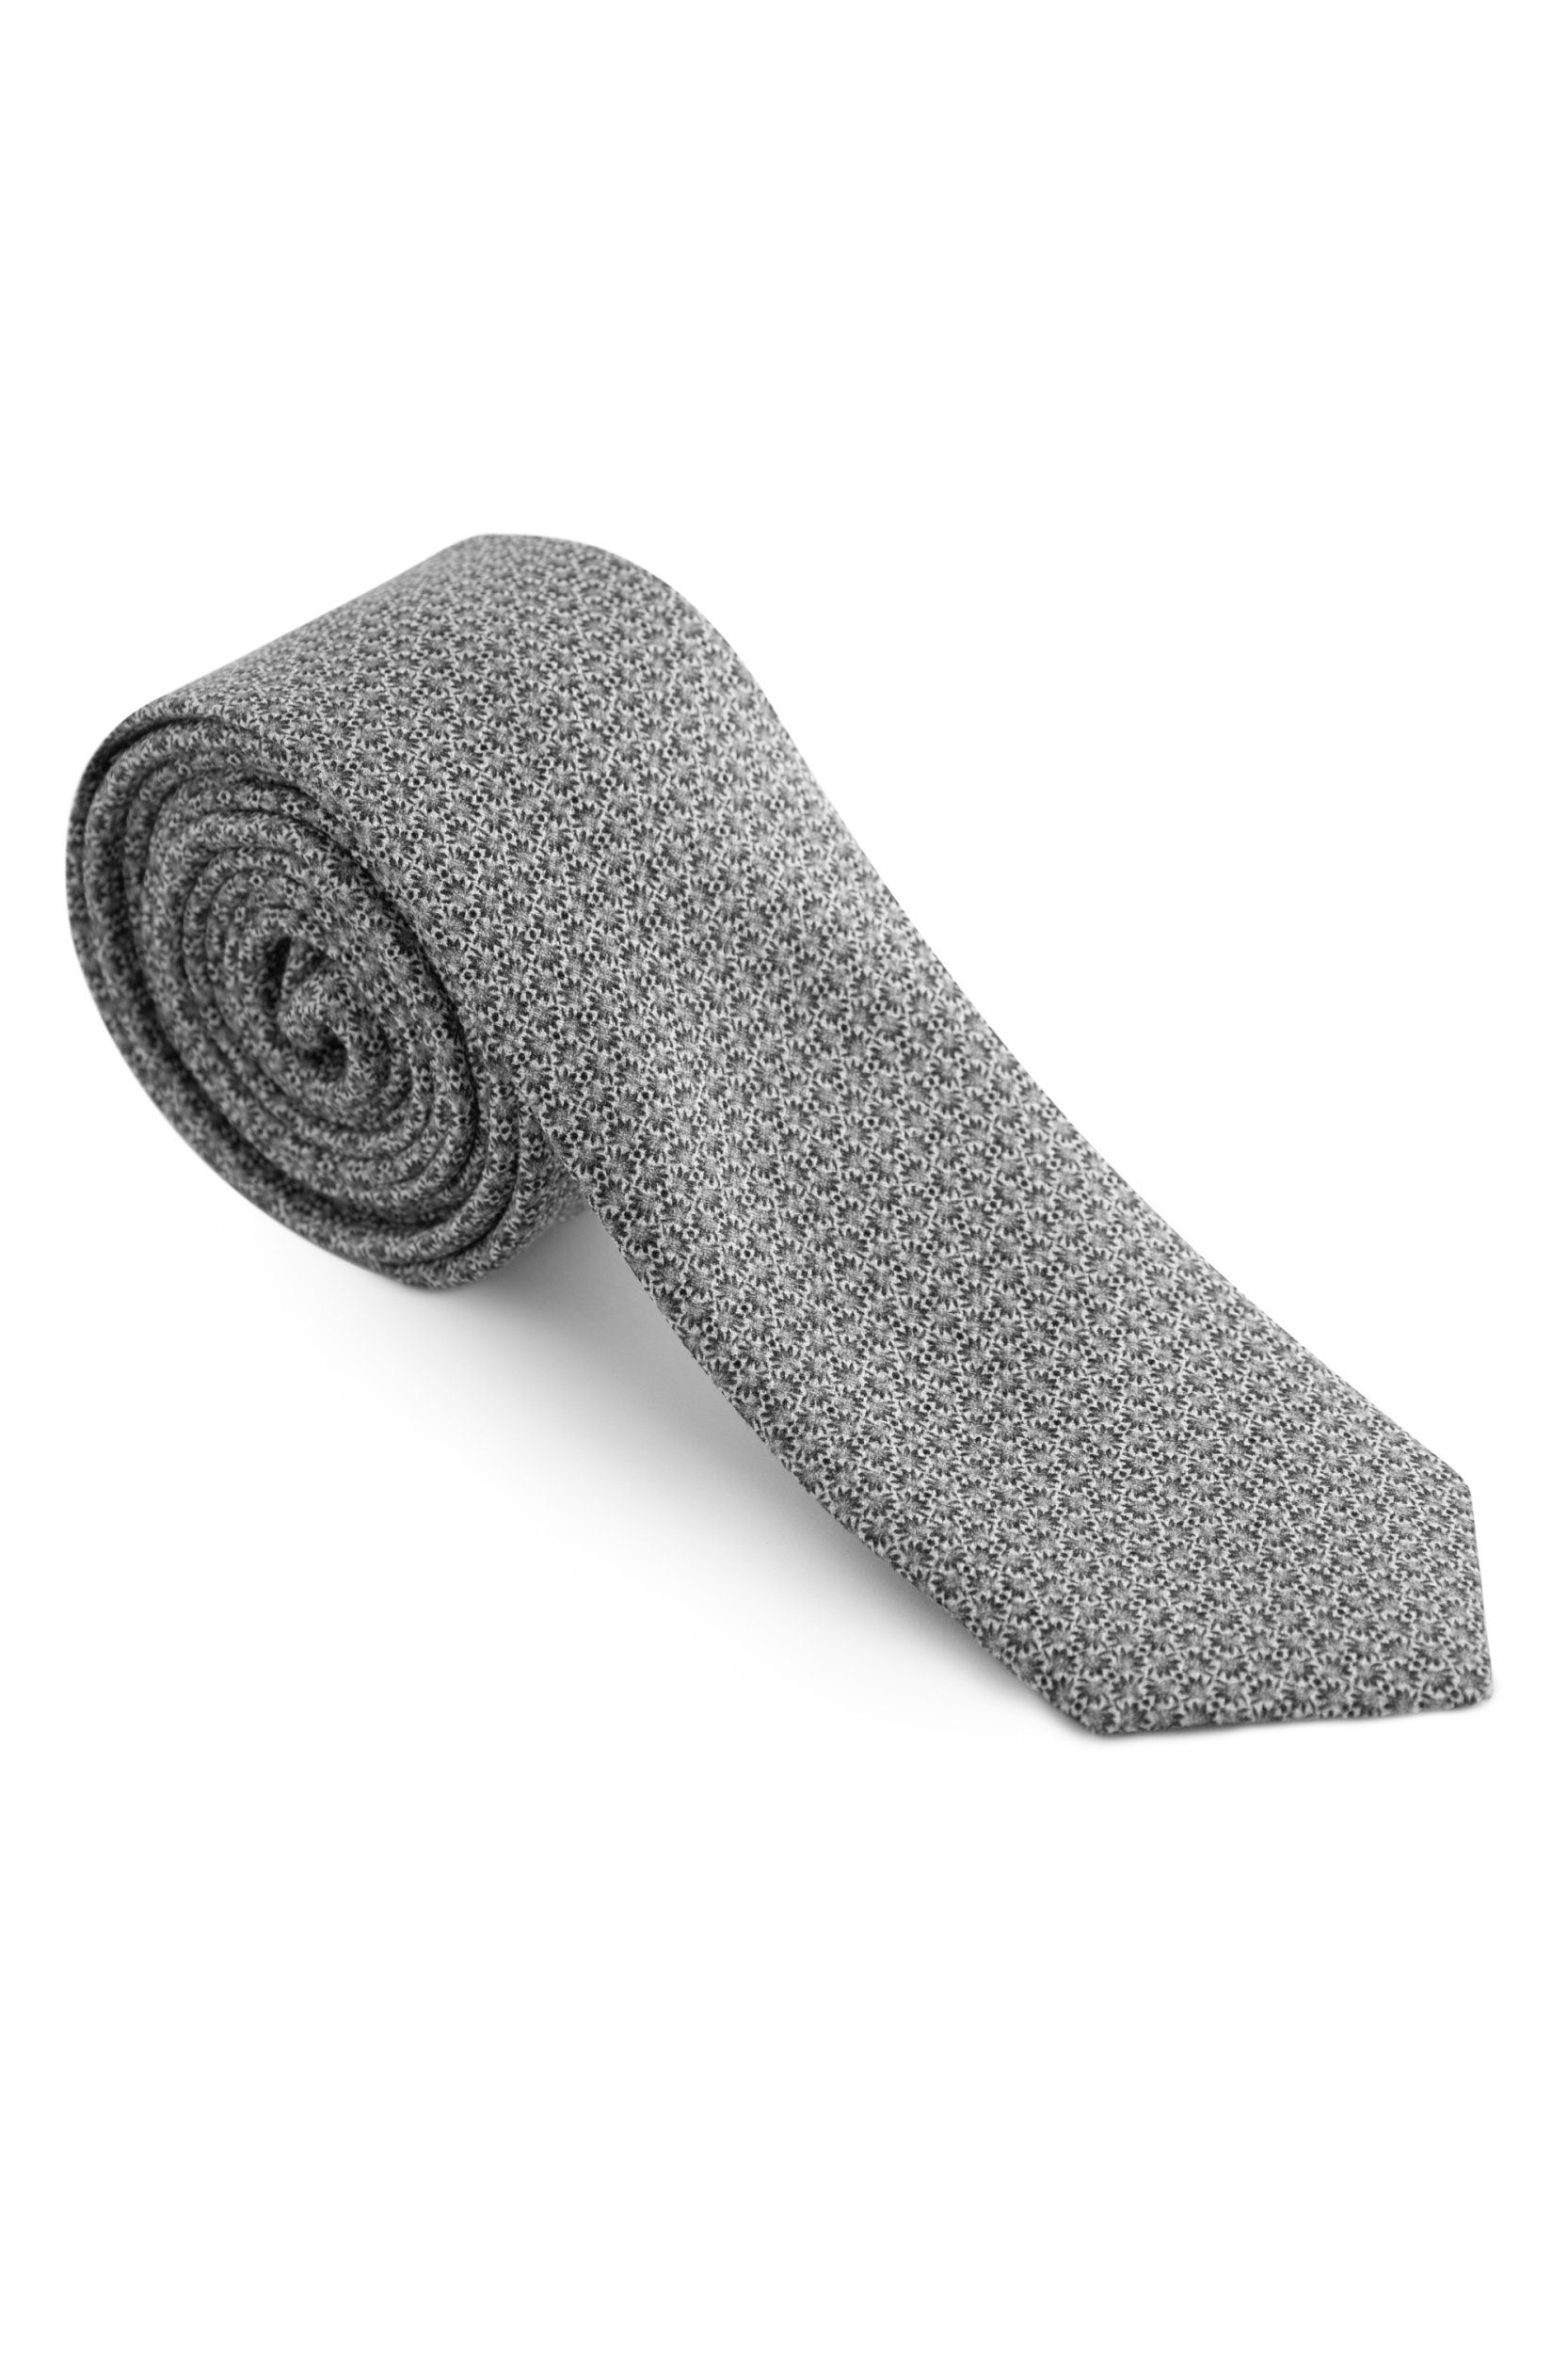 beliebter Saal Strellson Krawatte 11 Tie_6.0 grau 10015657